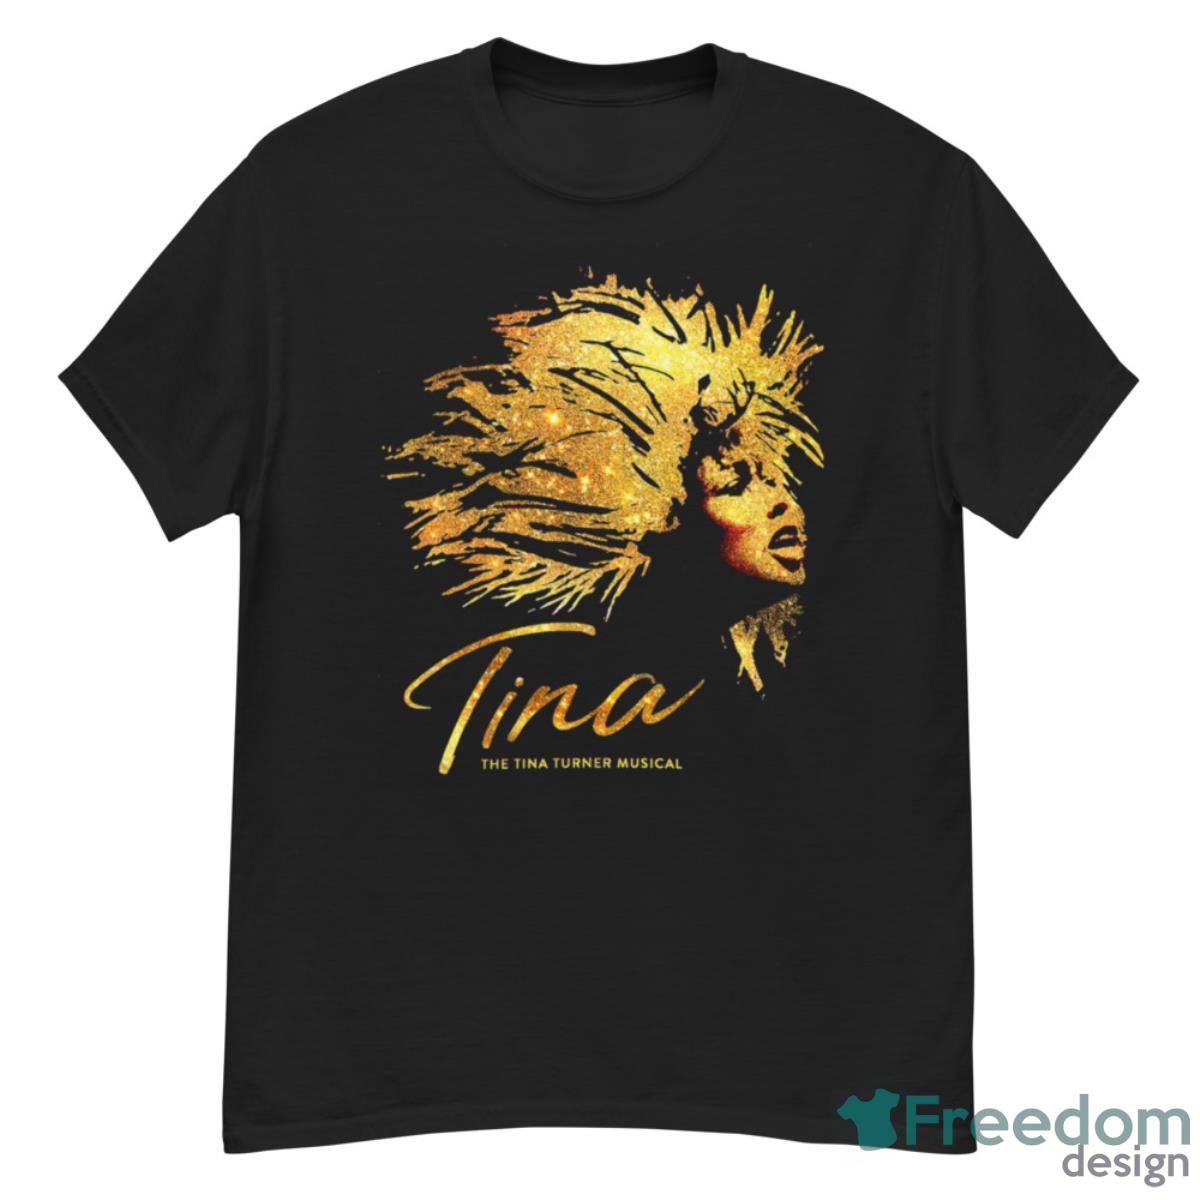 Tina Turner Musical Shirt